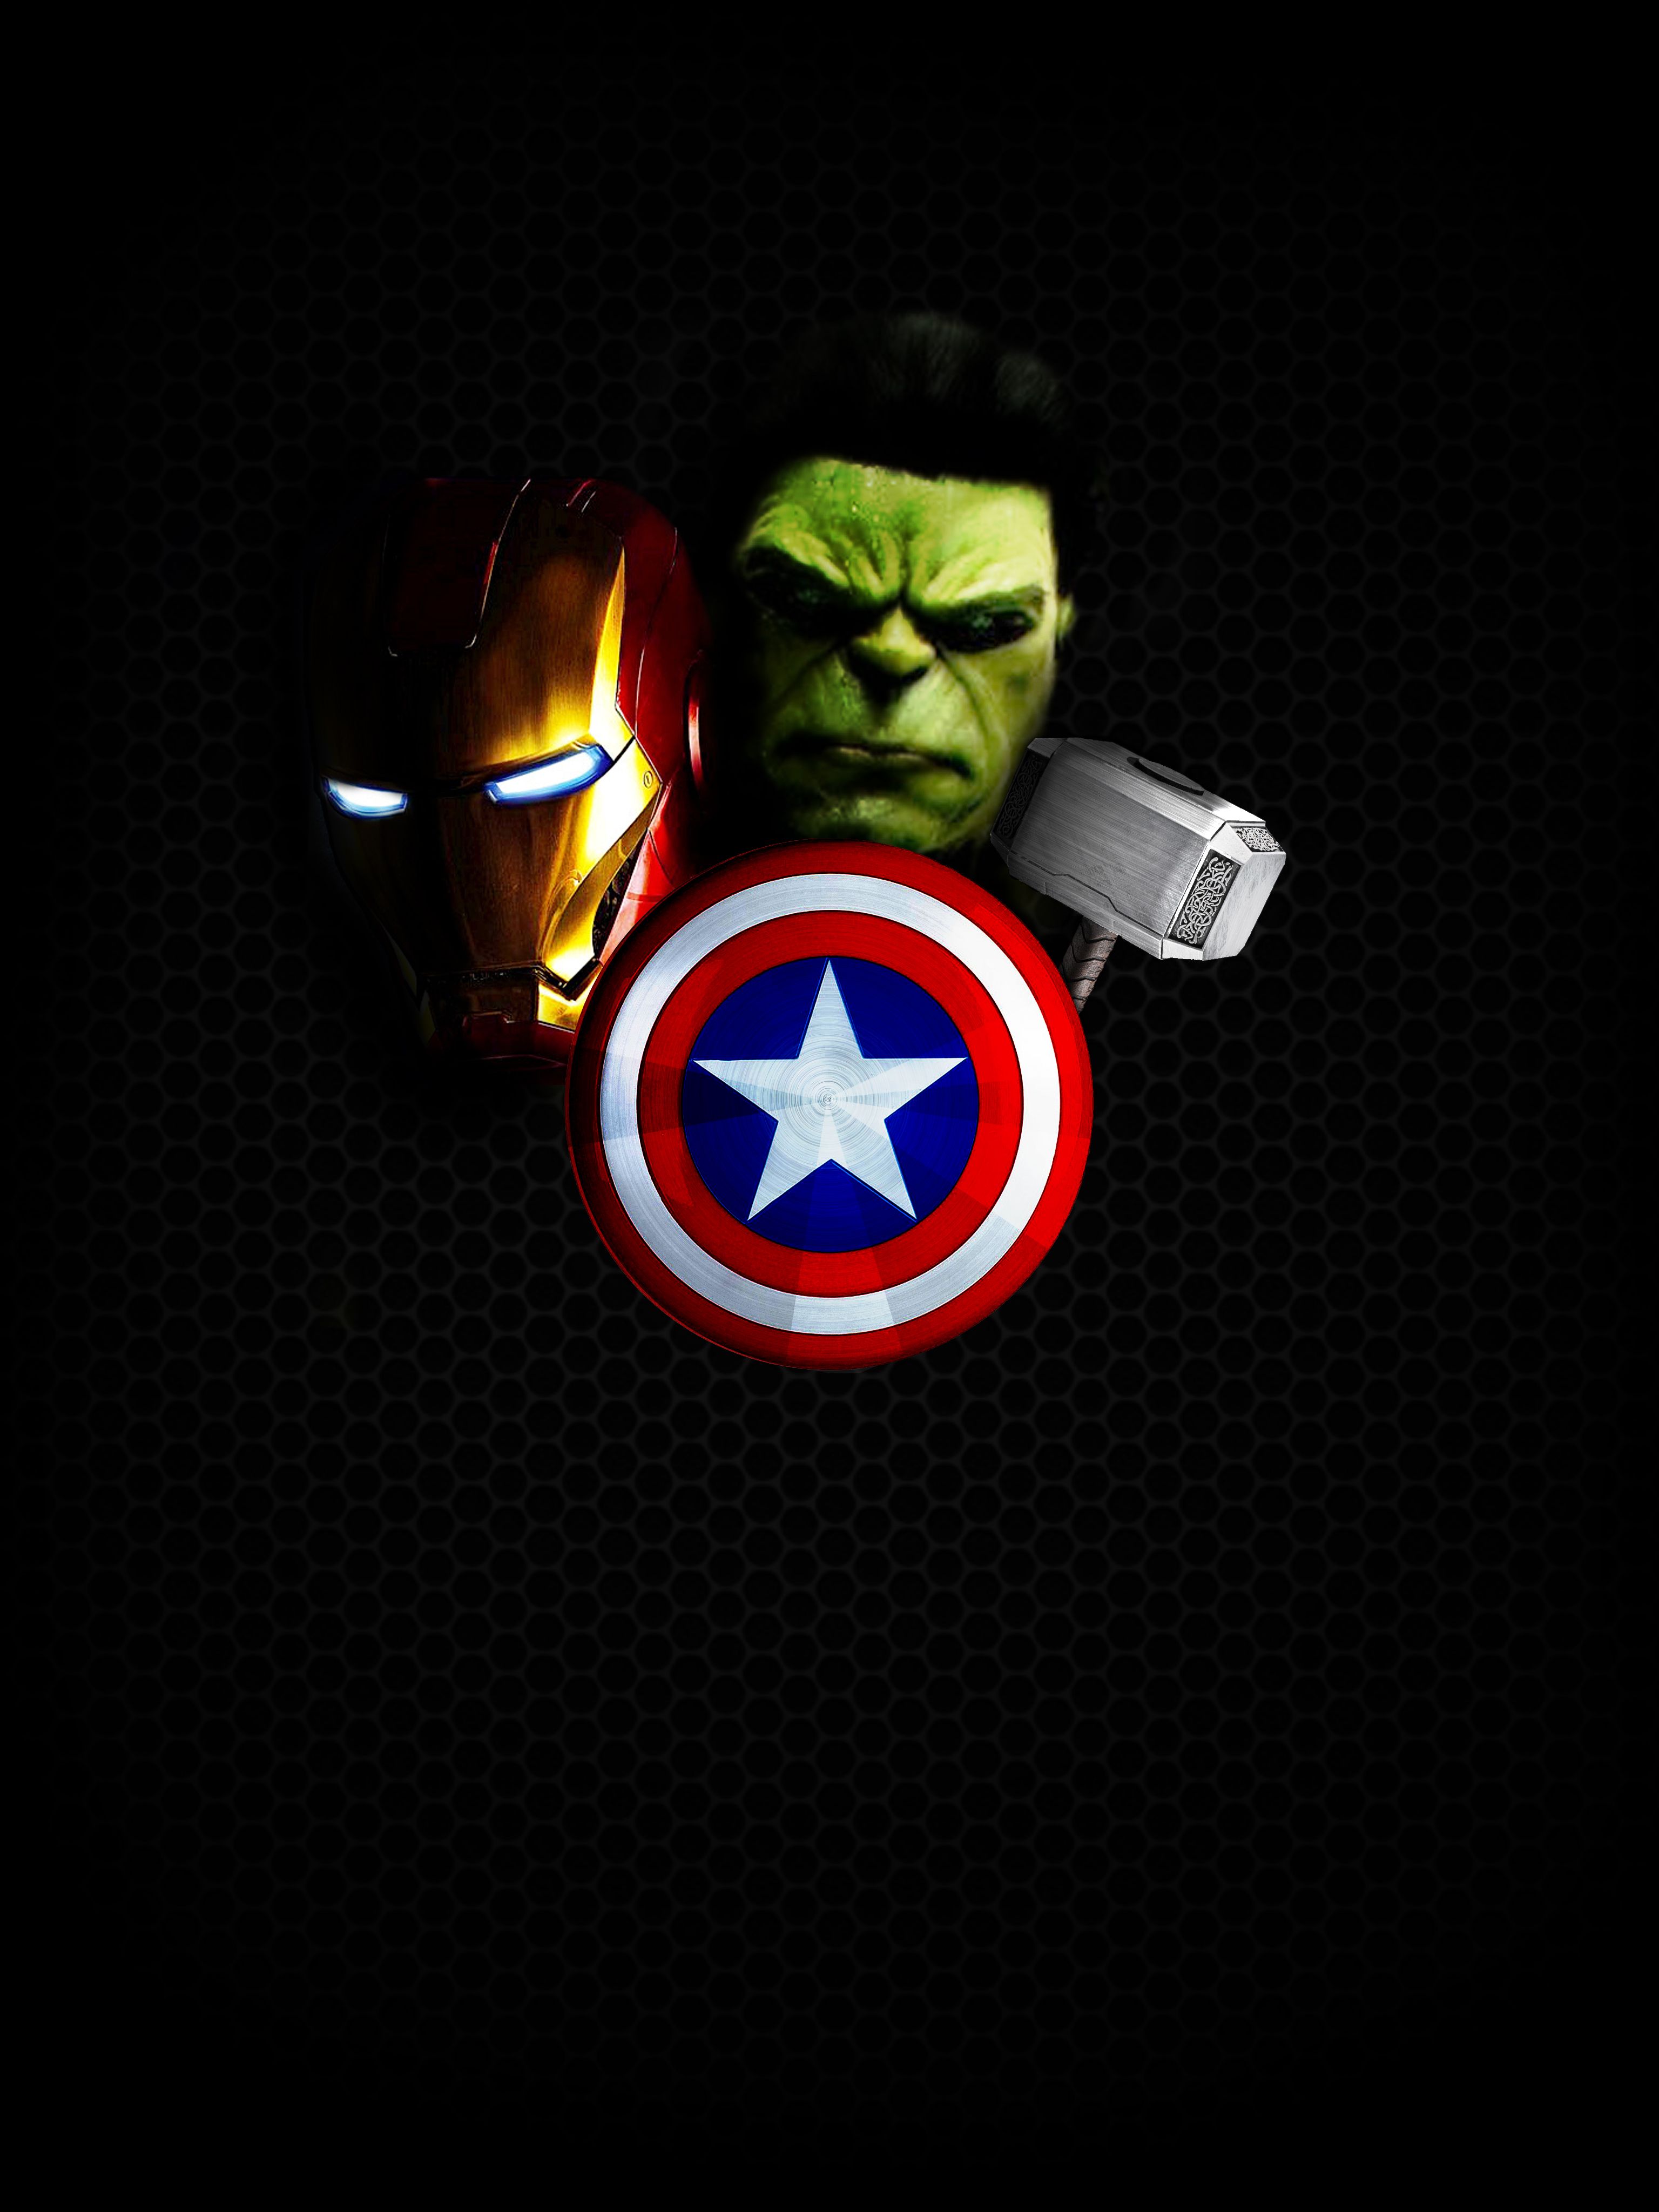 49+] Avengers iPhone Fondos de pantalla